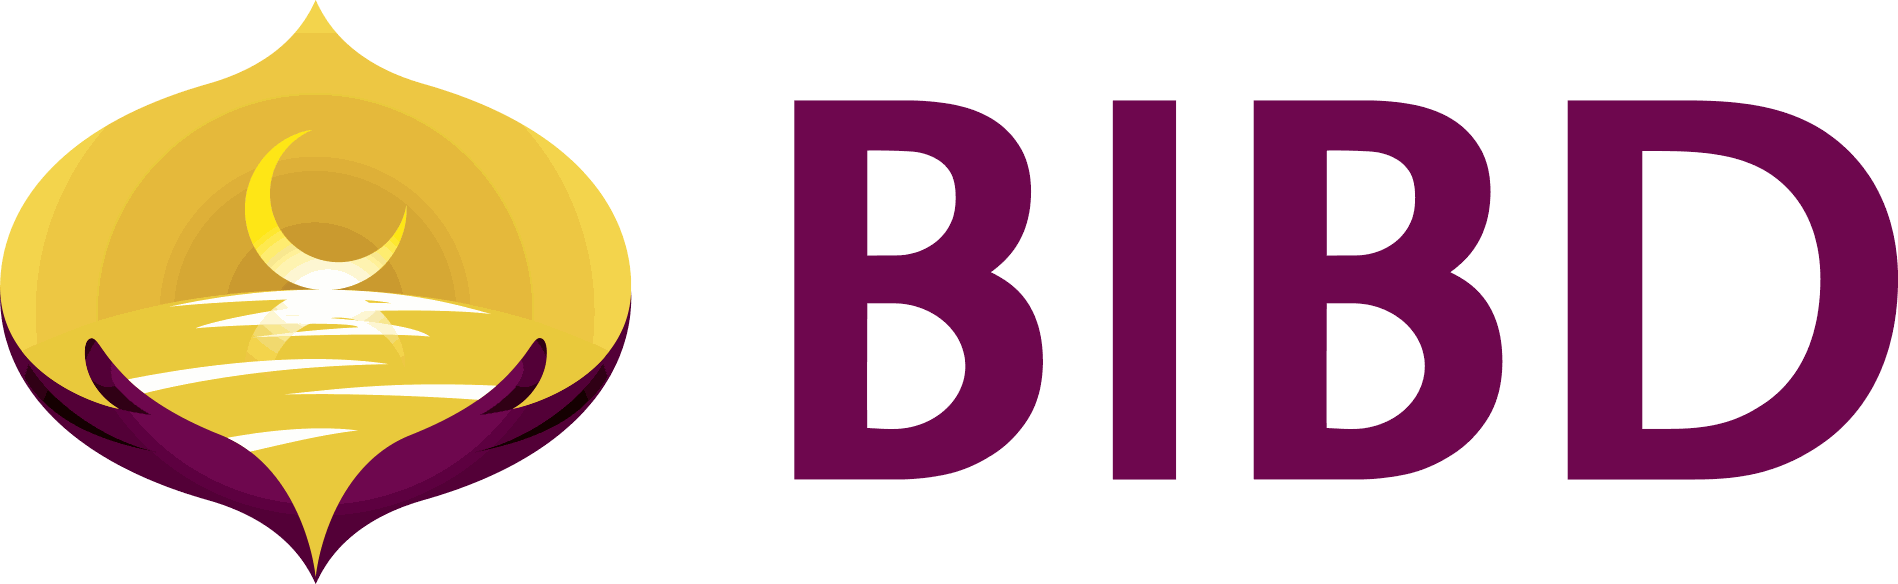 BIBD Logo - Magenta